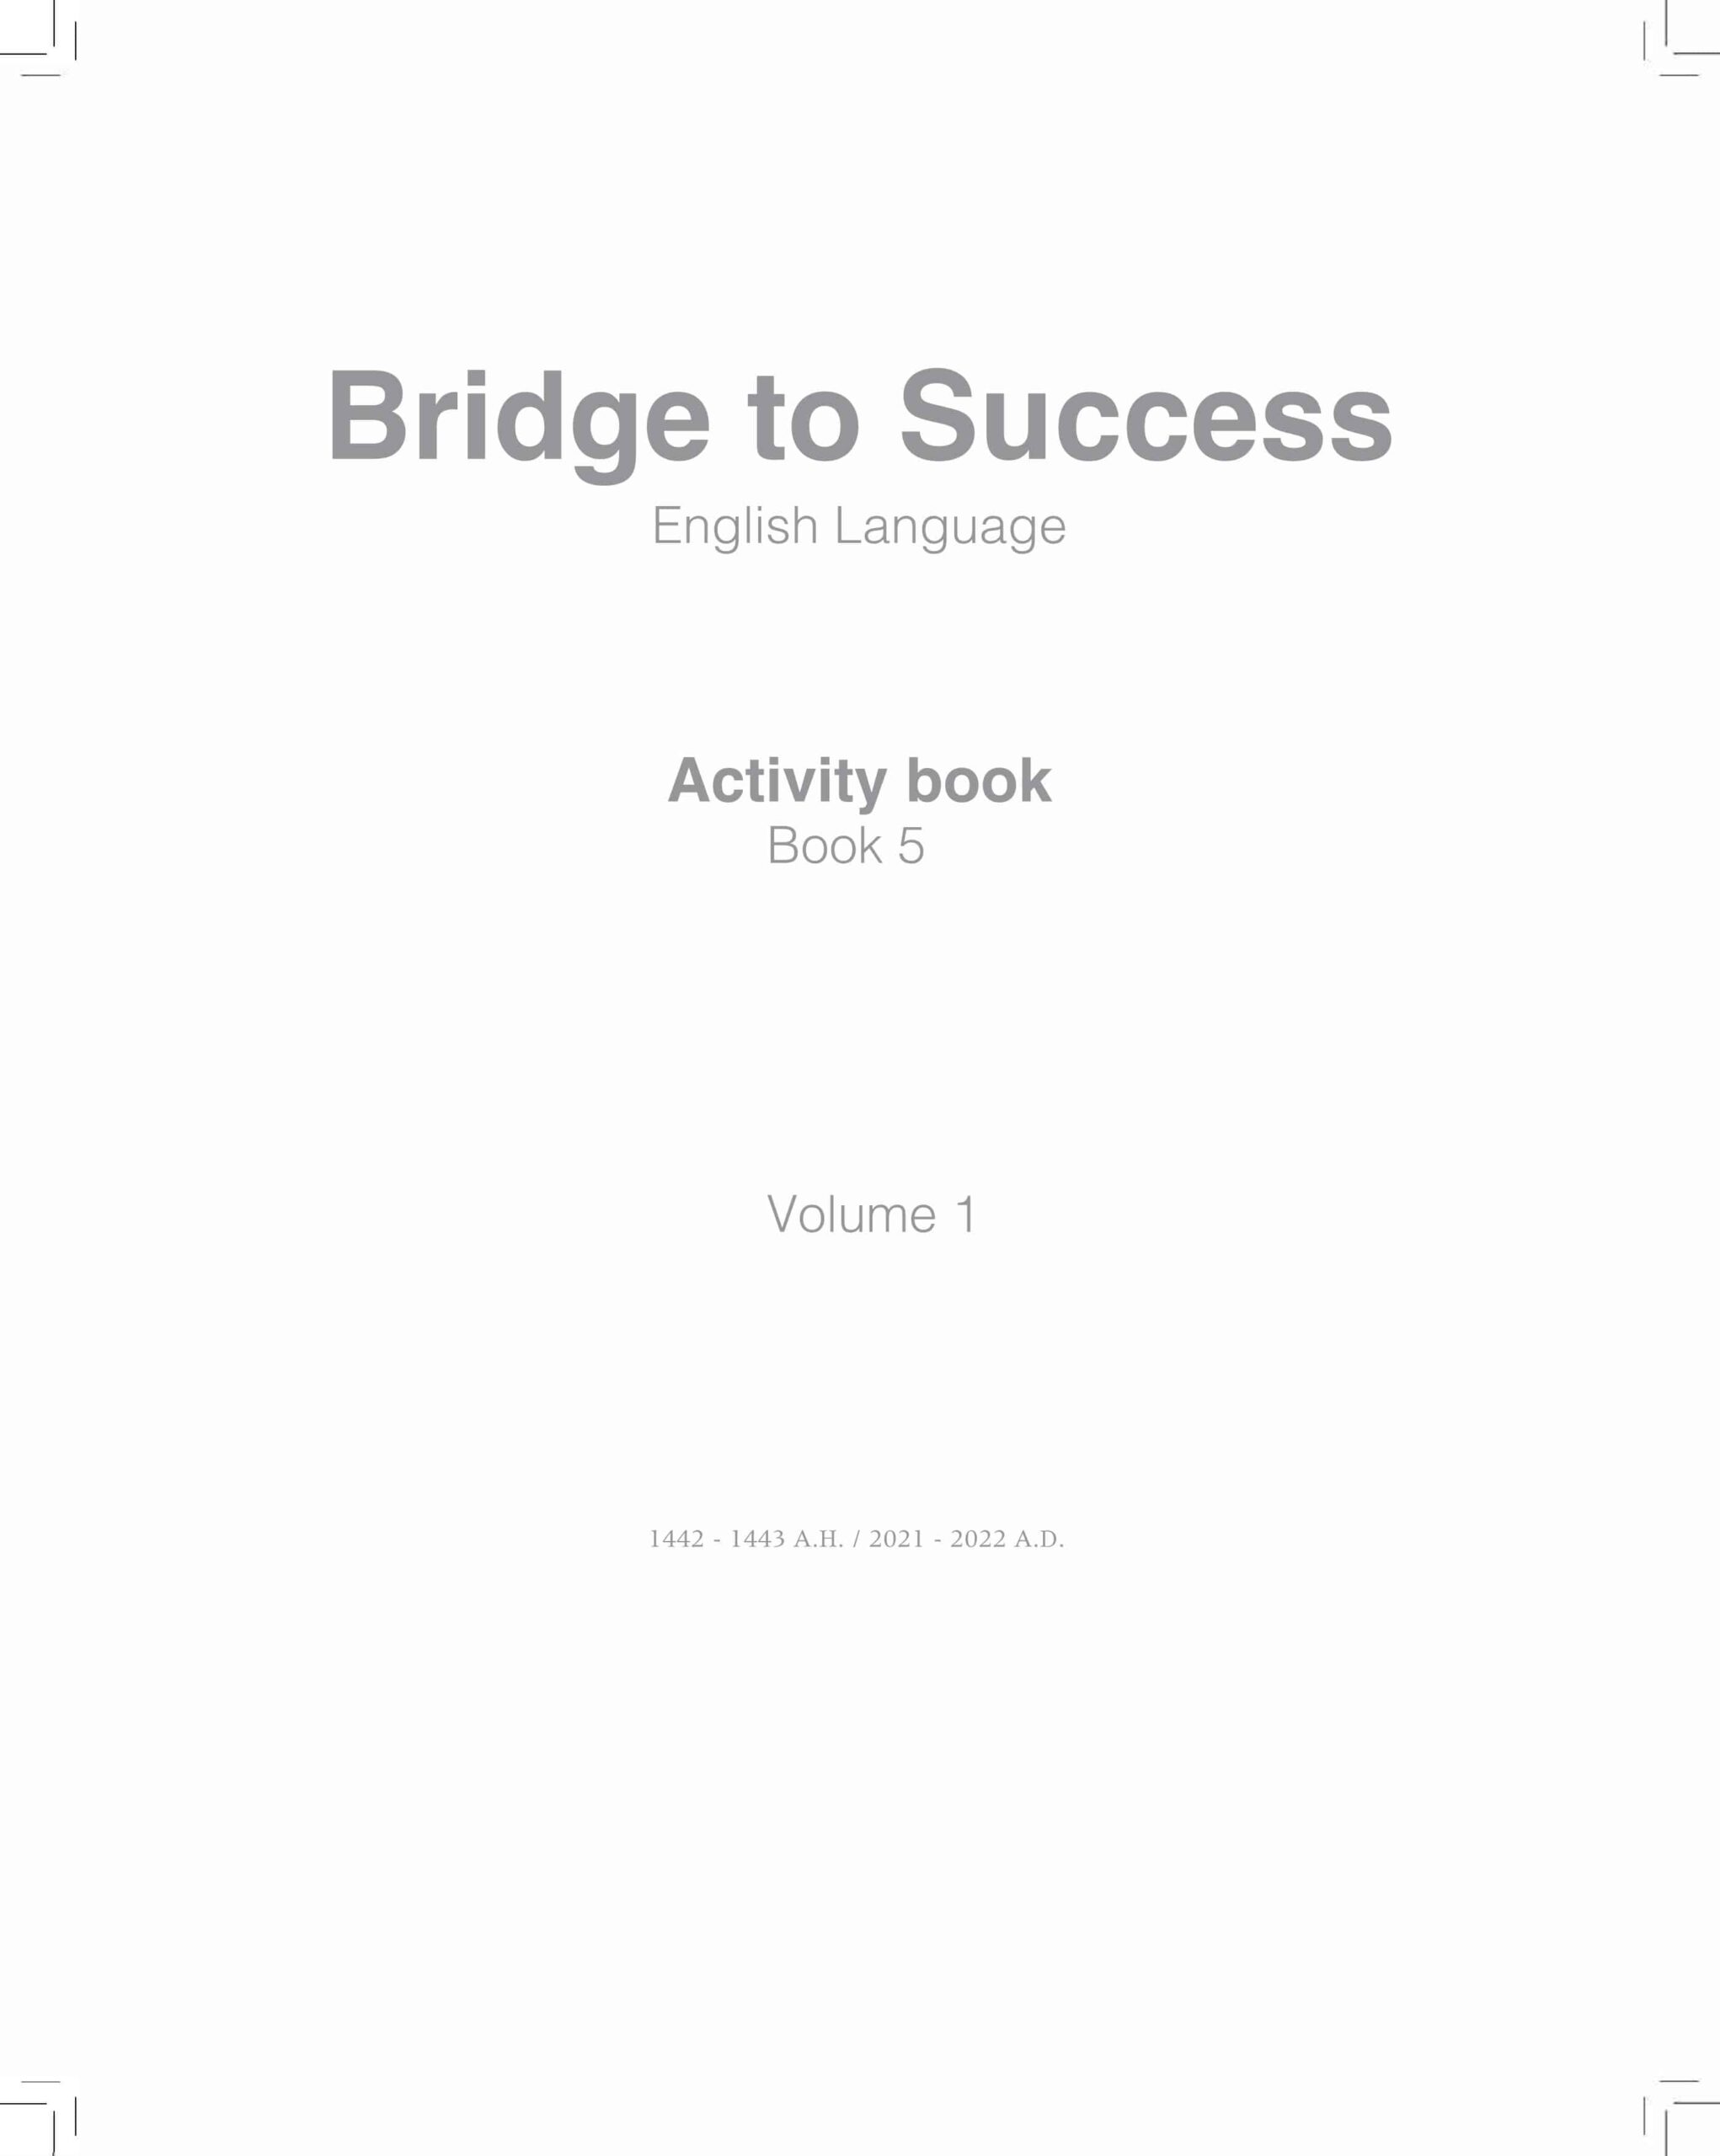 كتاب النشاط Activity book اللغة الإنجليزية الصف الخامس الفصل الدراسي الأول 2021-2022 